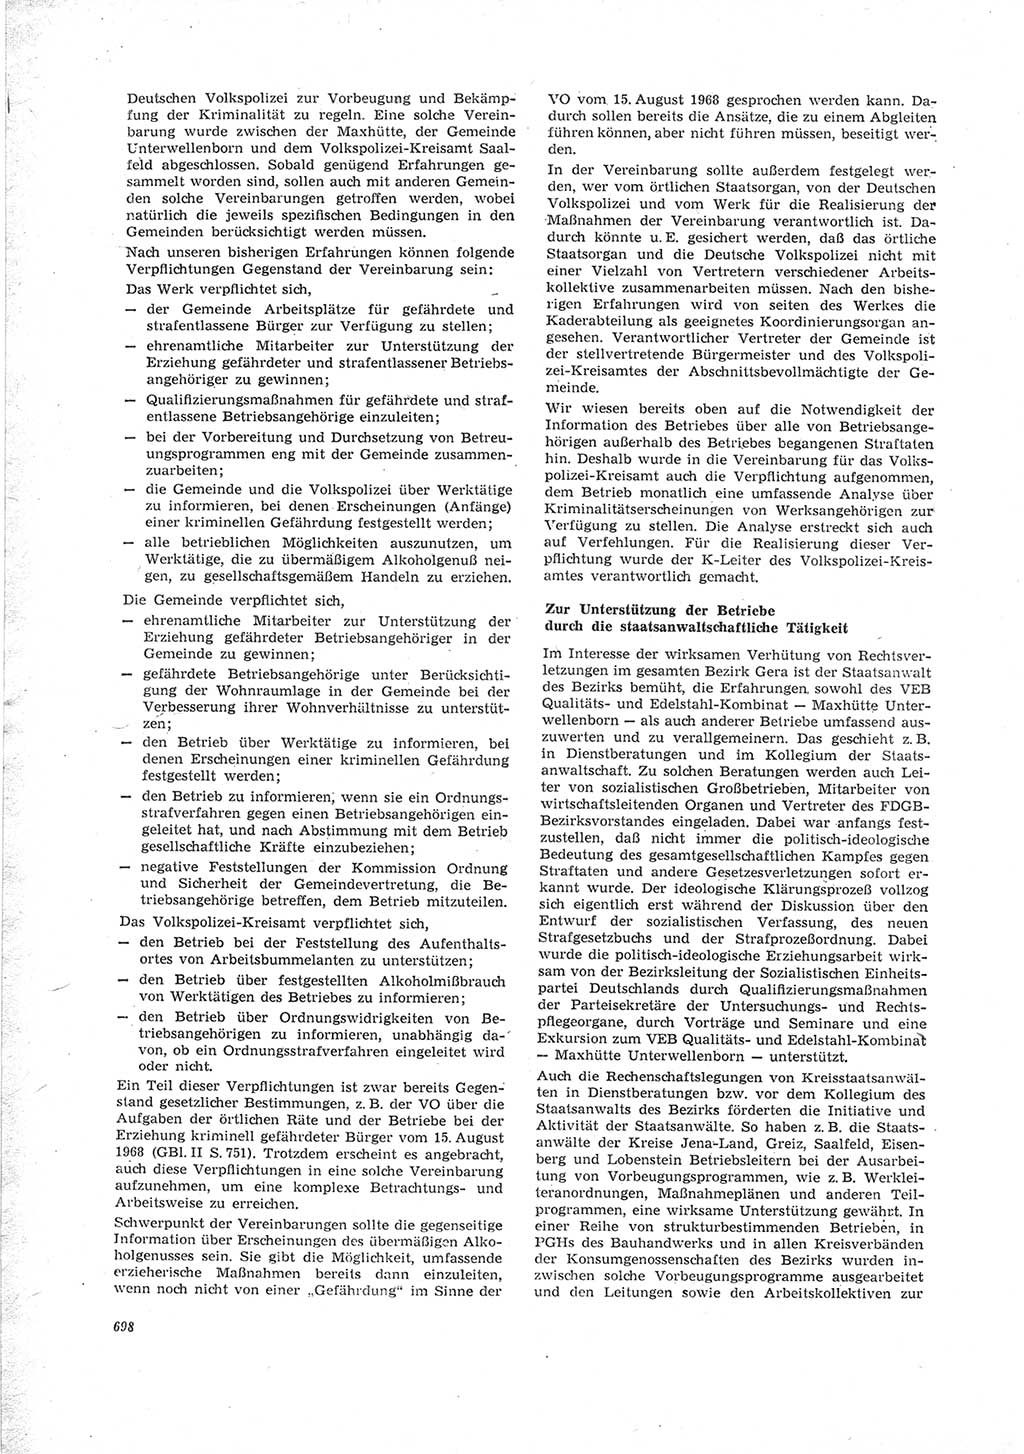 Neue Justiz (NJ), Zeitschrift für Recht und Rechtswissenschaft [Deutsche Demokratische Republik (DDR)], 23. Jahrgang 1969, Seite 698 (NJ DDR 1969, S. 698)